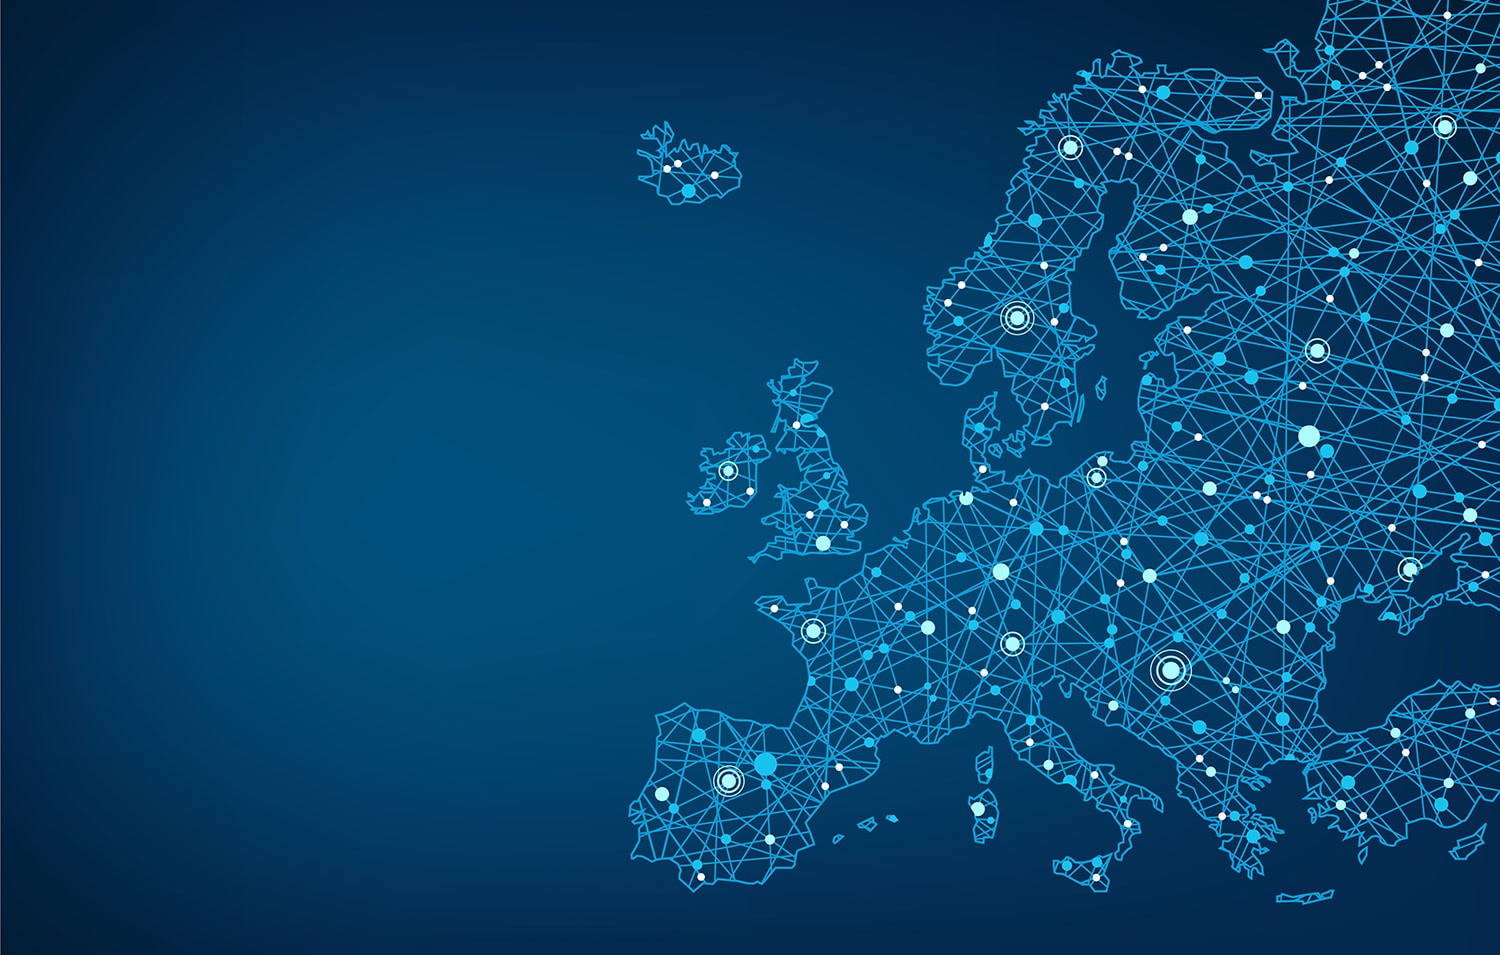 Europakarte komplett in Blau mit unzäligen Verbindungslinien. Die Karte erinnert an ein Computernetzwerk mit diversen Satellitenpunkten.